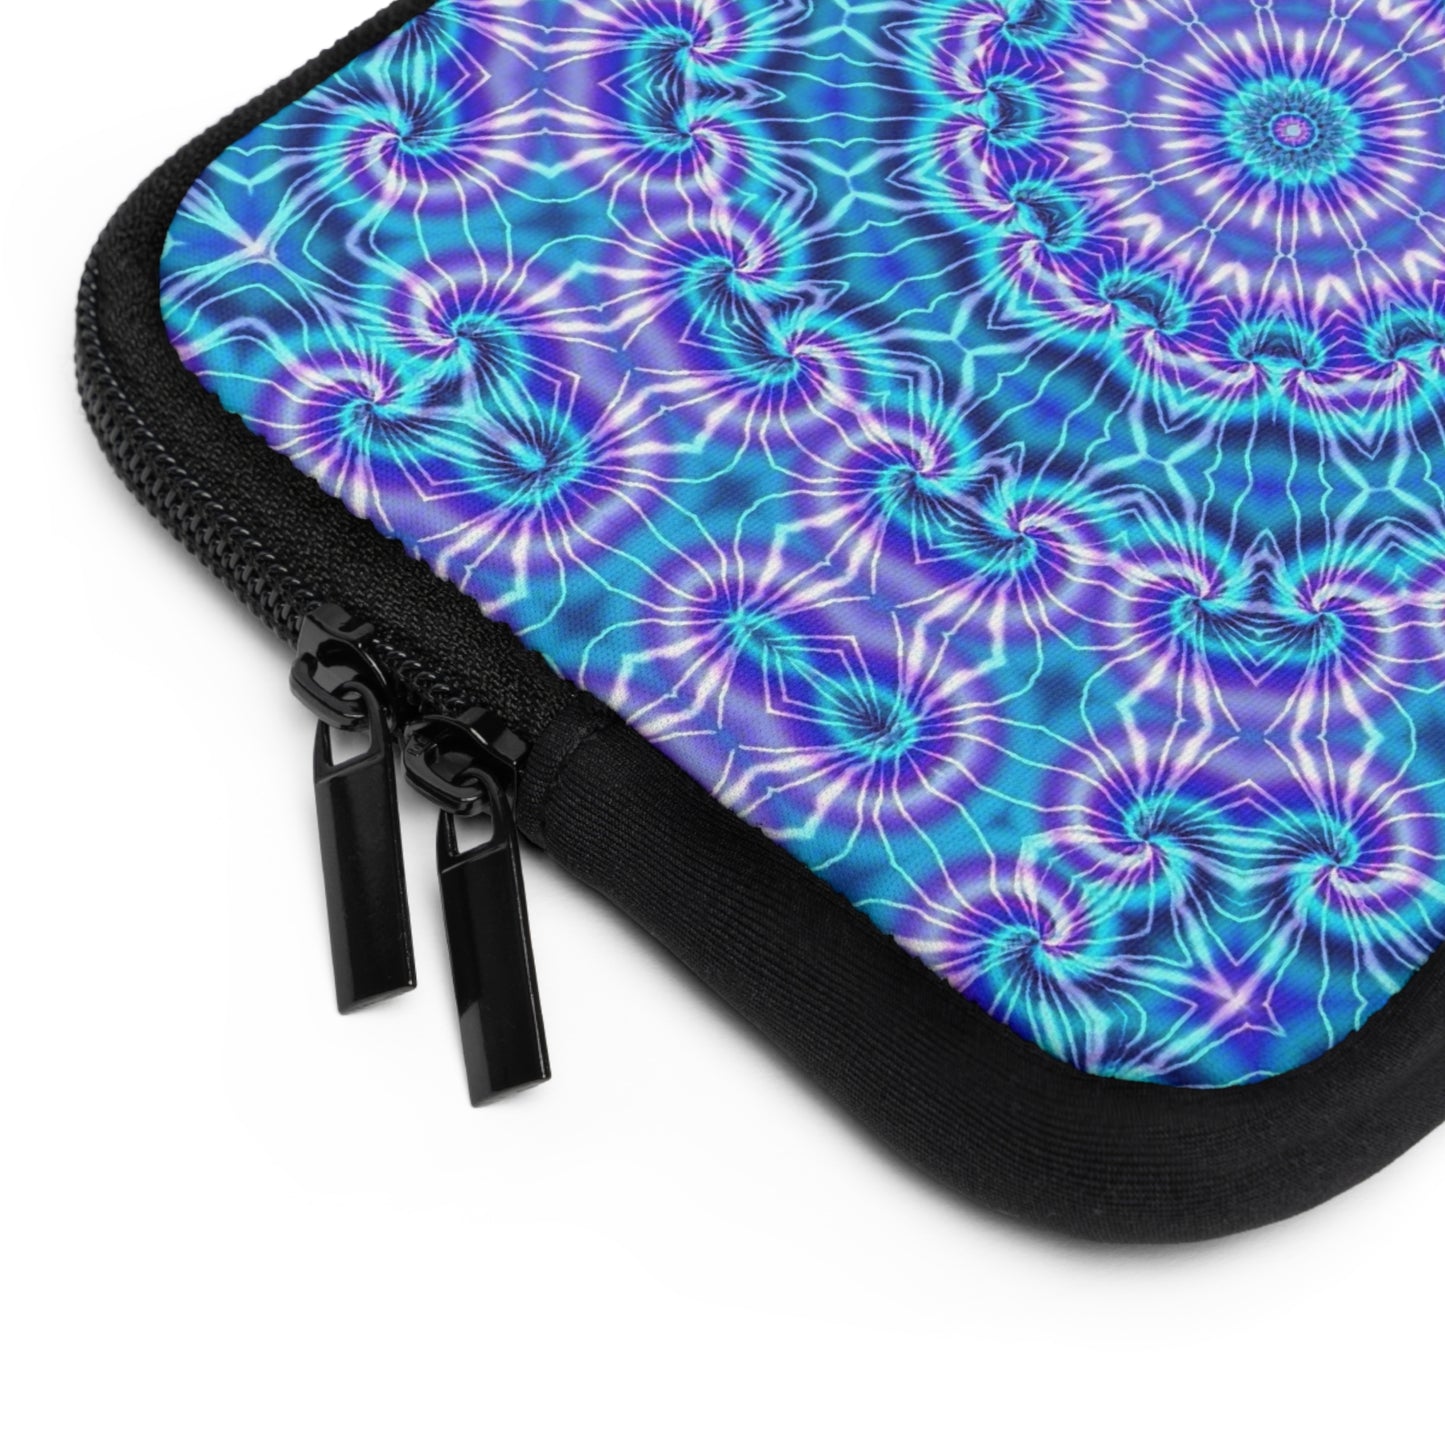 Blue and Purple Tie Dye Kaleidoscope Laptop Sleeve